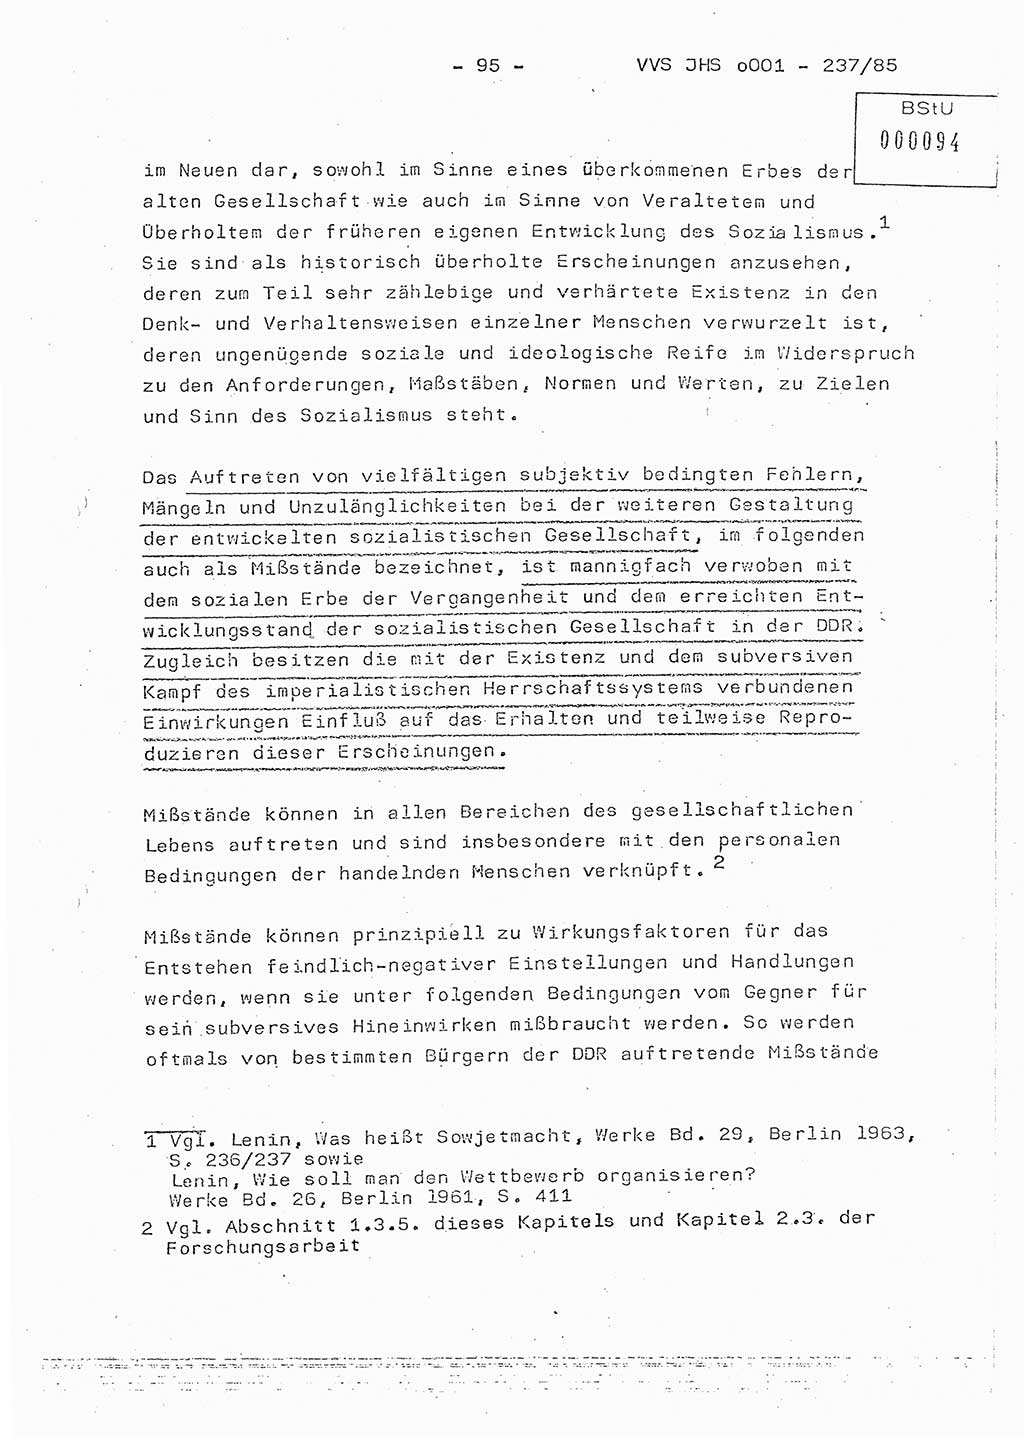 Dissertation Oberstleutnant Peter Jakulski (JHS), Oberstleutnat Christian Rudolph (HA Ⅸ), Major Horst Böttger (ZMD), Major Wolfgang Grüneberg (JHS), Major Albert Meutsch (JHS), Ministerium für Staatssicherheit (MfS) [Deutsche Demokratische Republik (DDR)], Juristische Hochschule (JHS), Vertrauliche Verschlußsache (VVS) o001-237/85, Potsdam 1985, Seite 95 (Diss. MfS DDR JHS VVS o001-237/85 1985, S. 95)